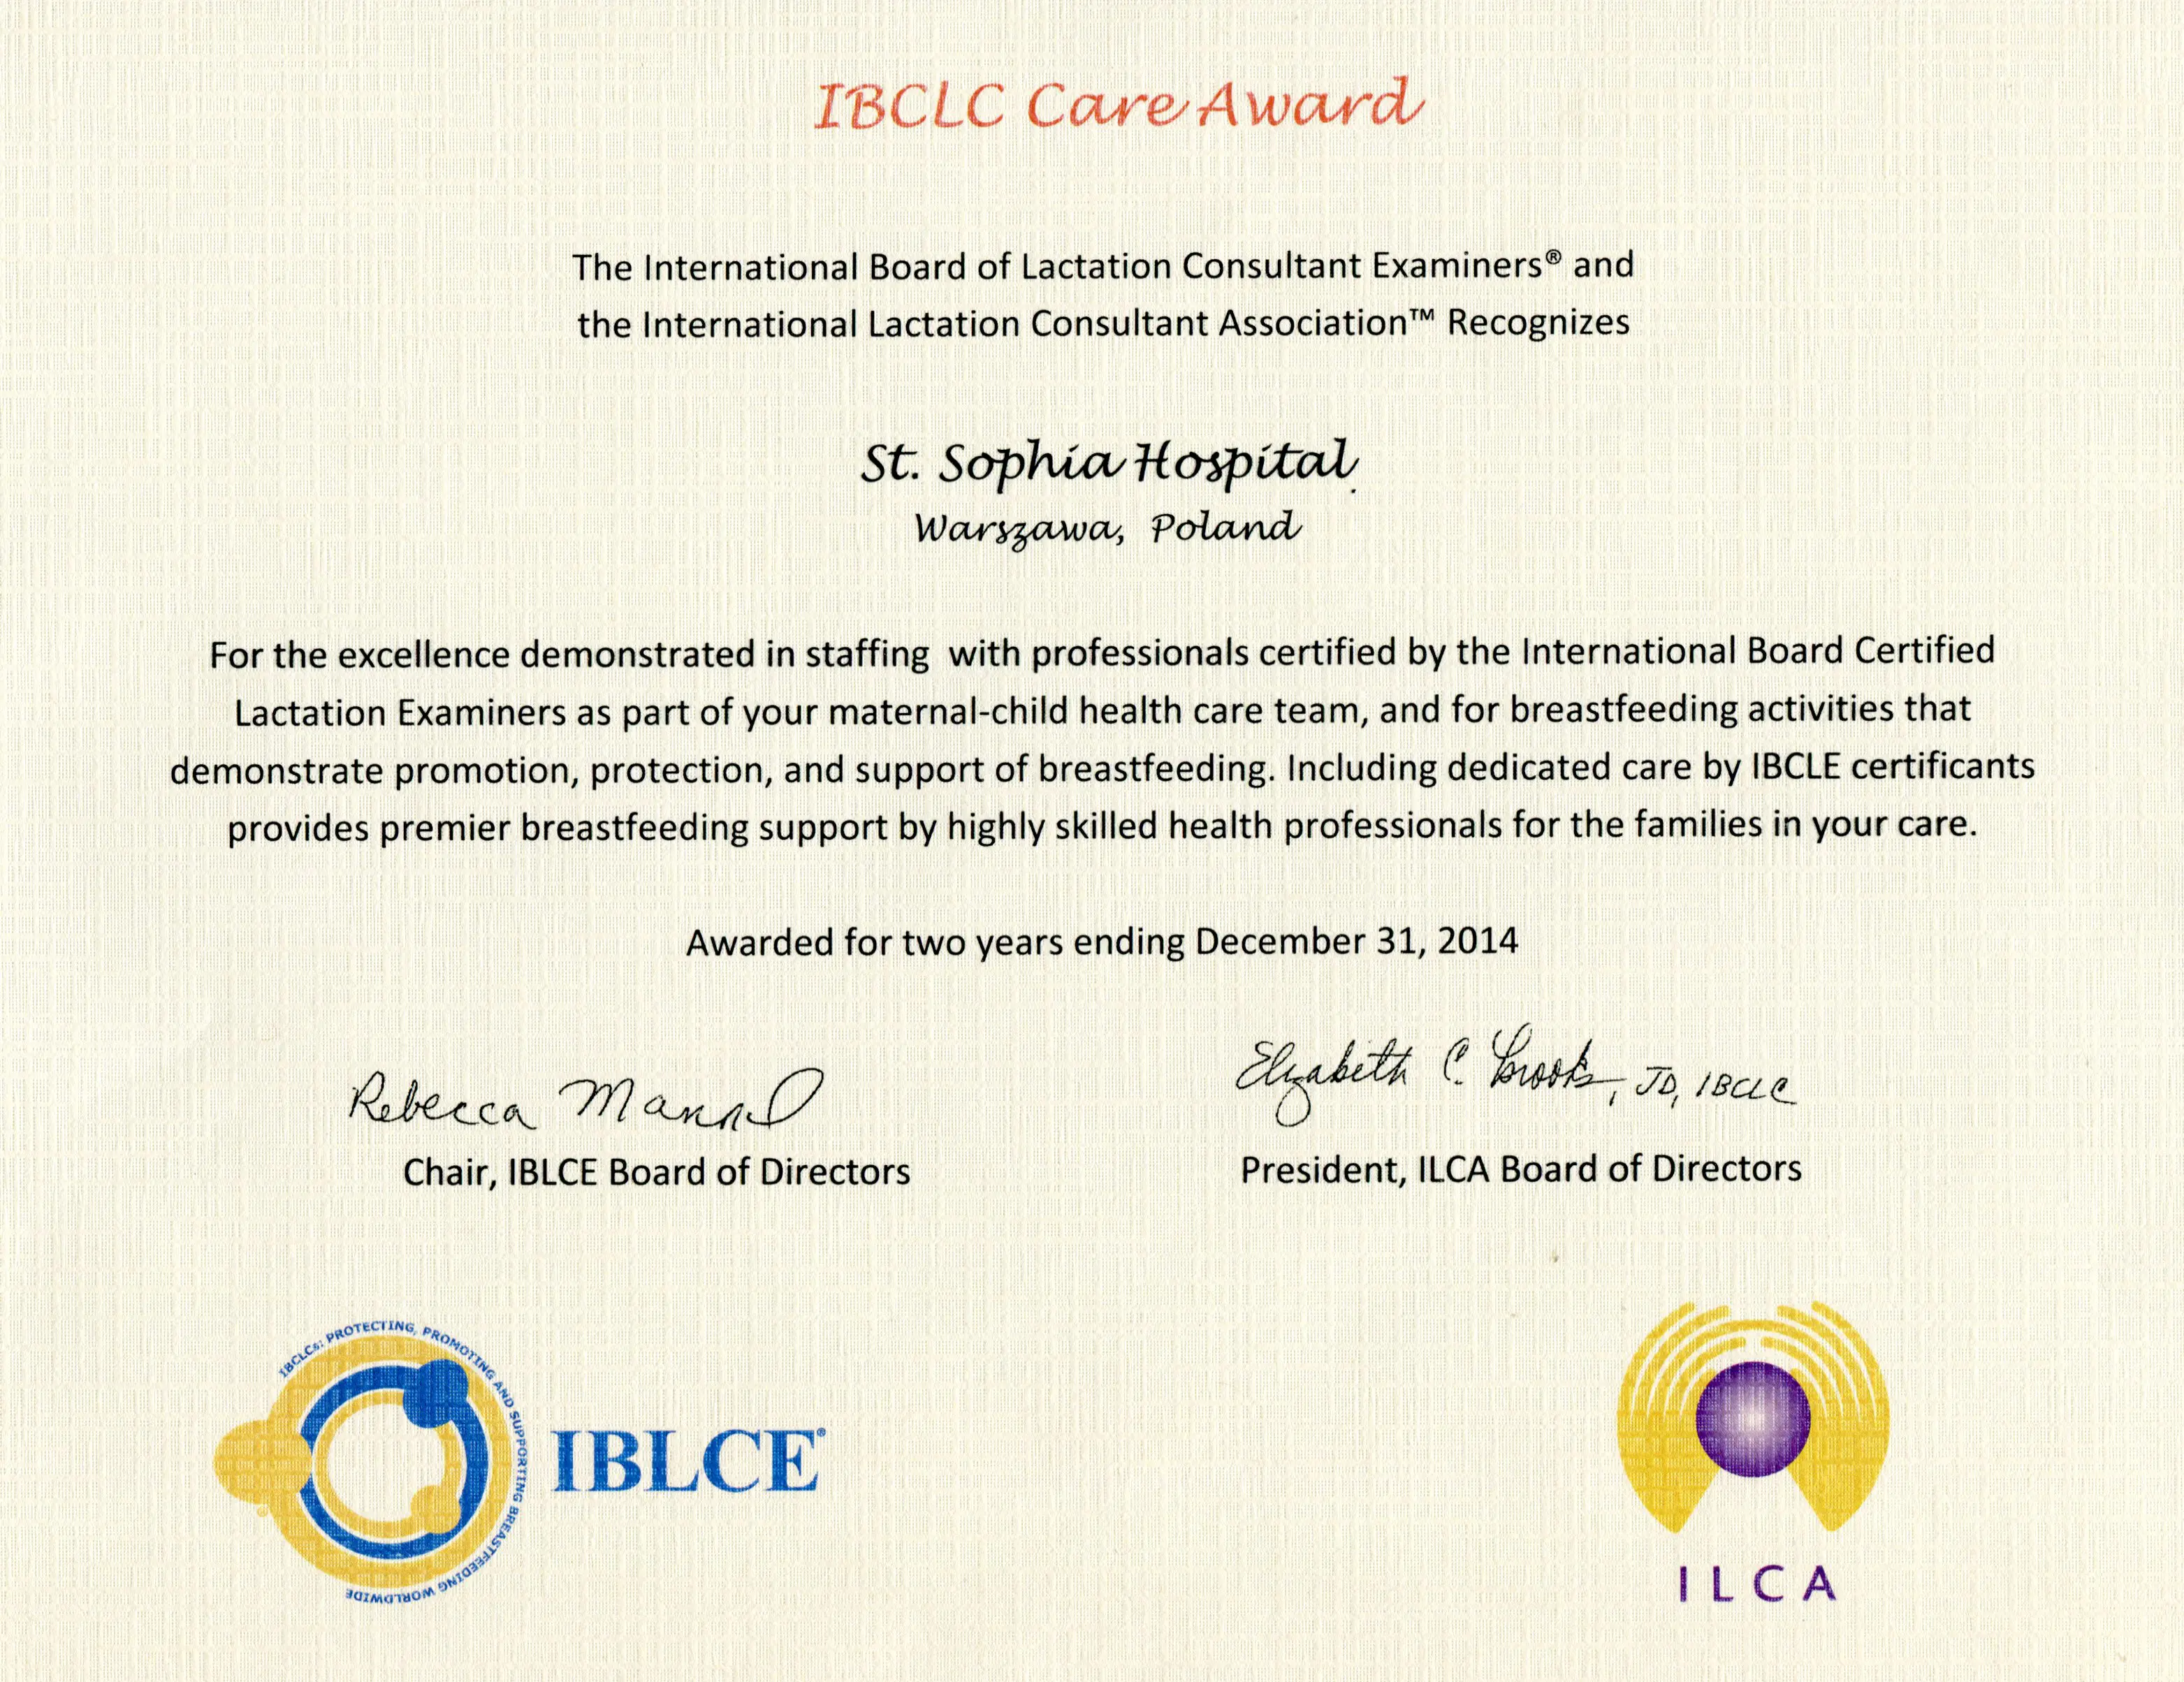 IBCLC 2013